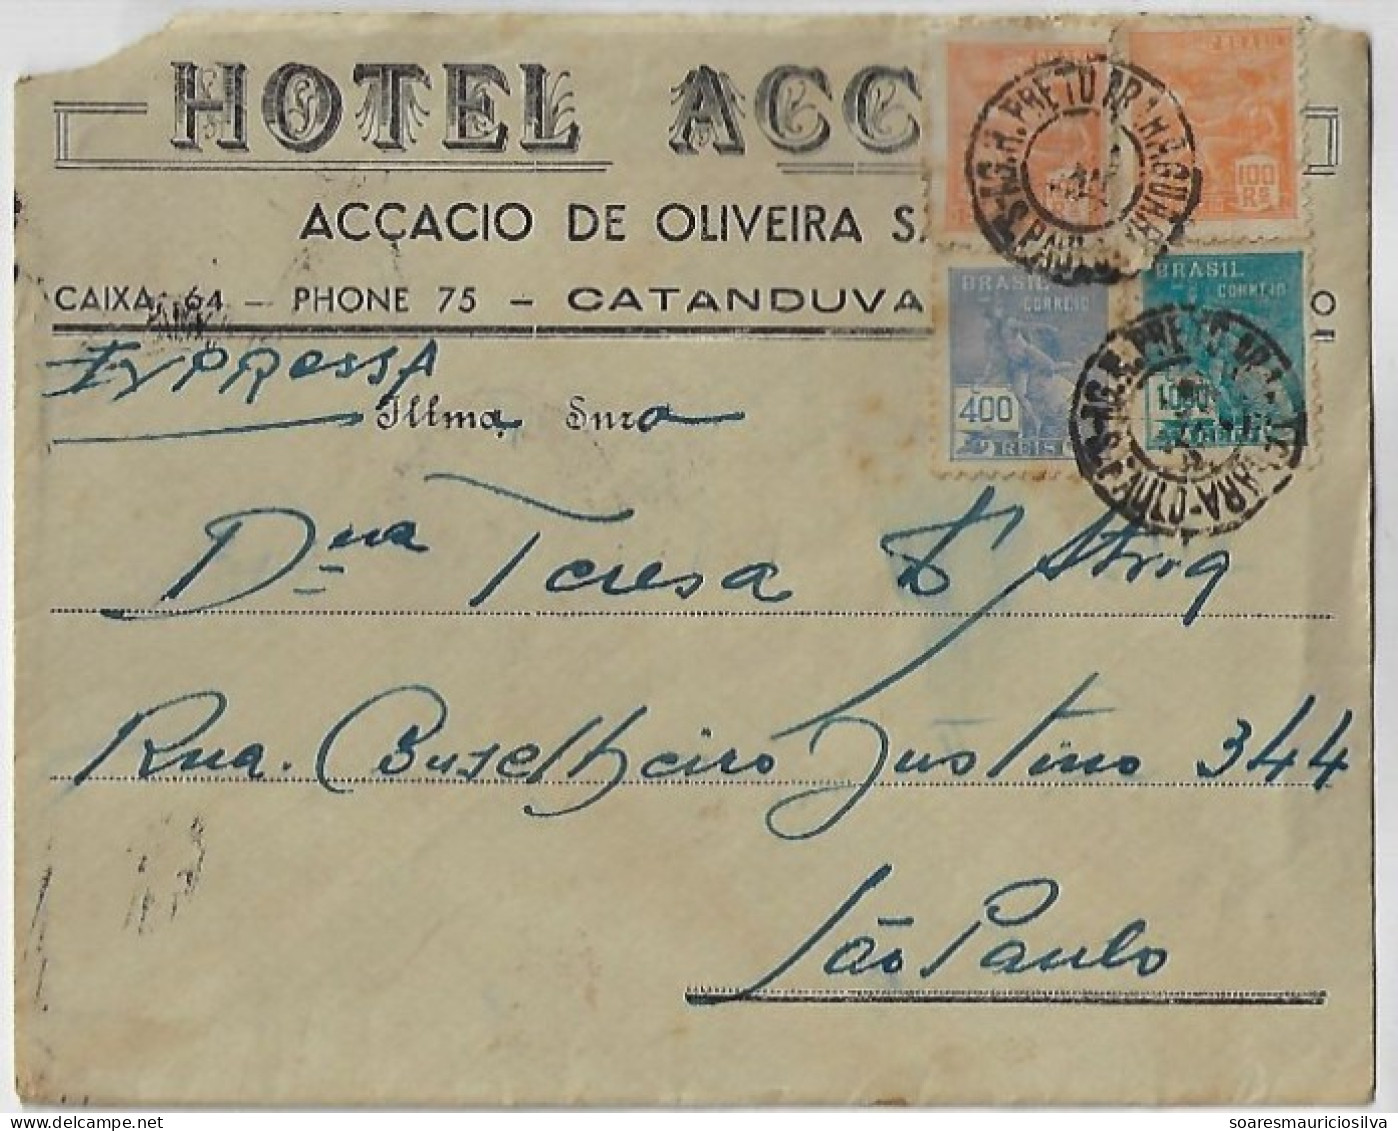 Brazil 1941 Accacio Hotel Express Cover From Catanduvas To São Paulo Railway Cancel Rio Preto X Araraquara 1,600 Réis - Covers & Documents